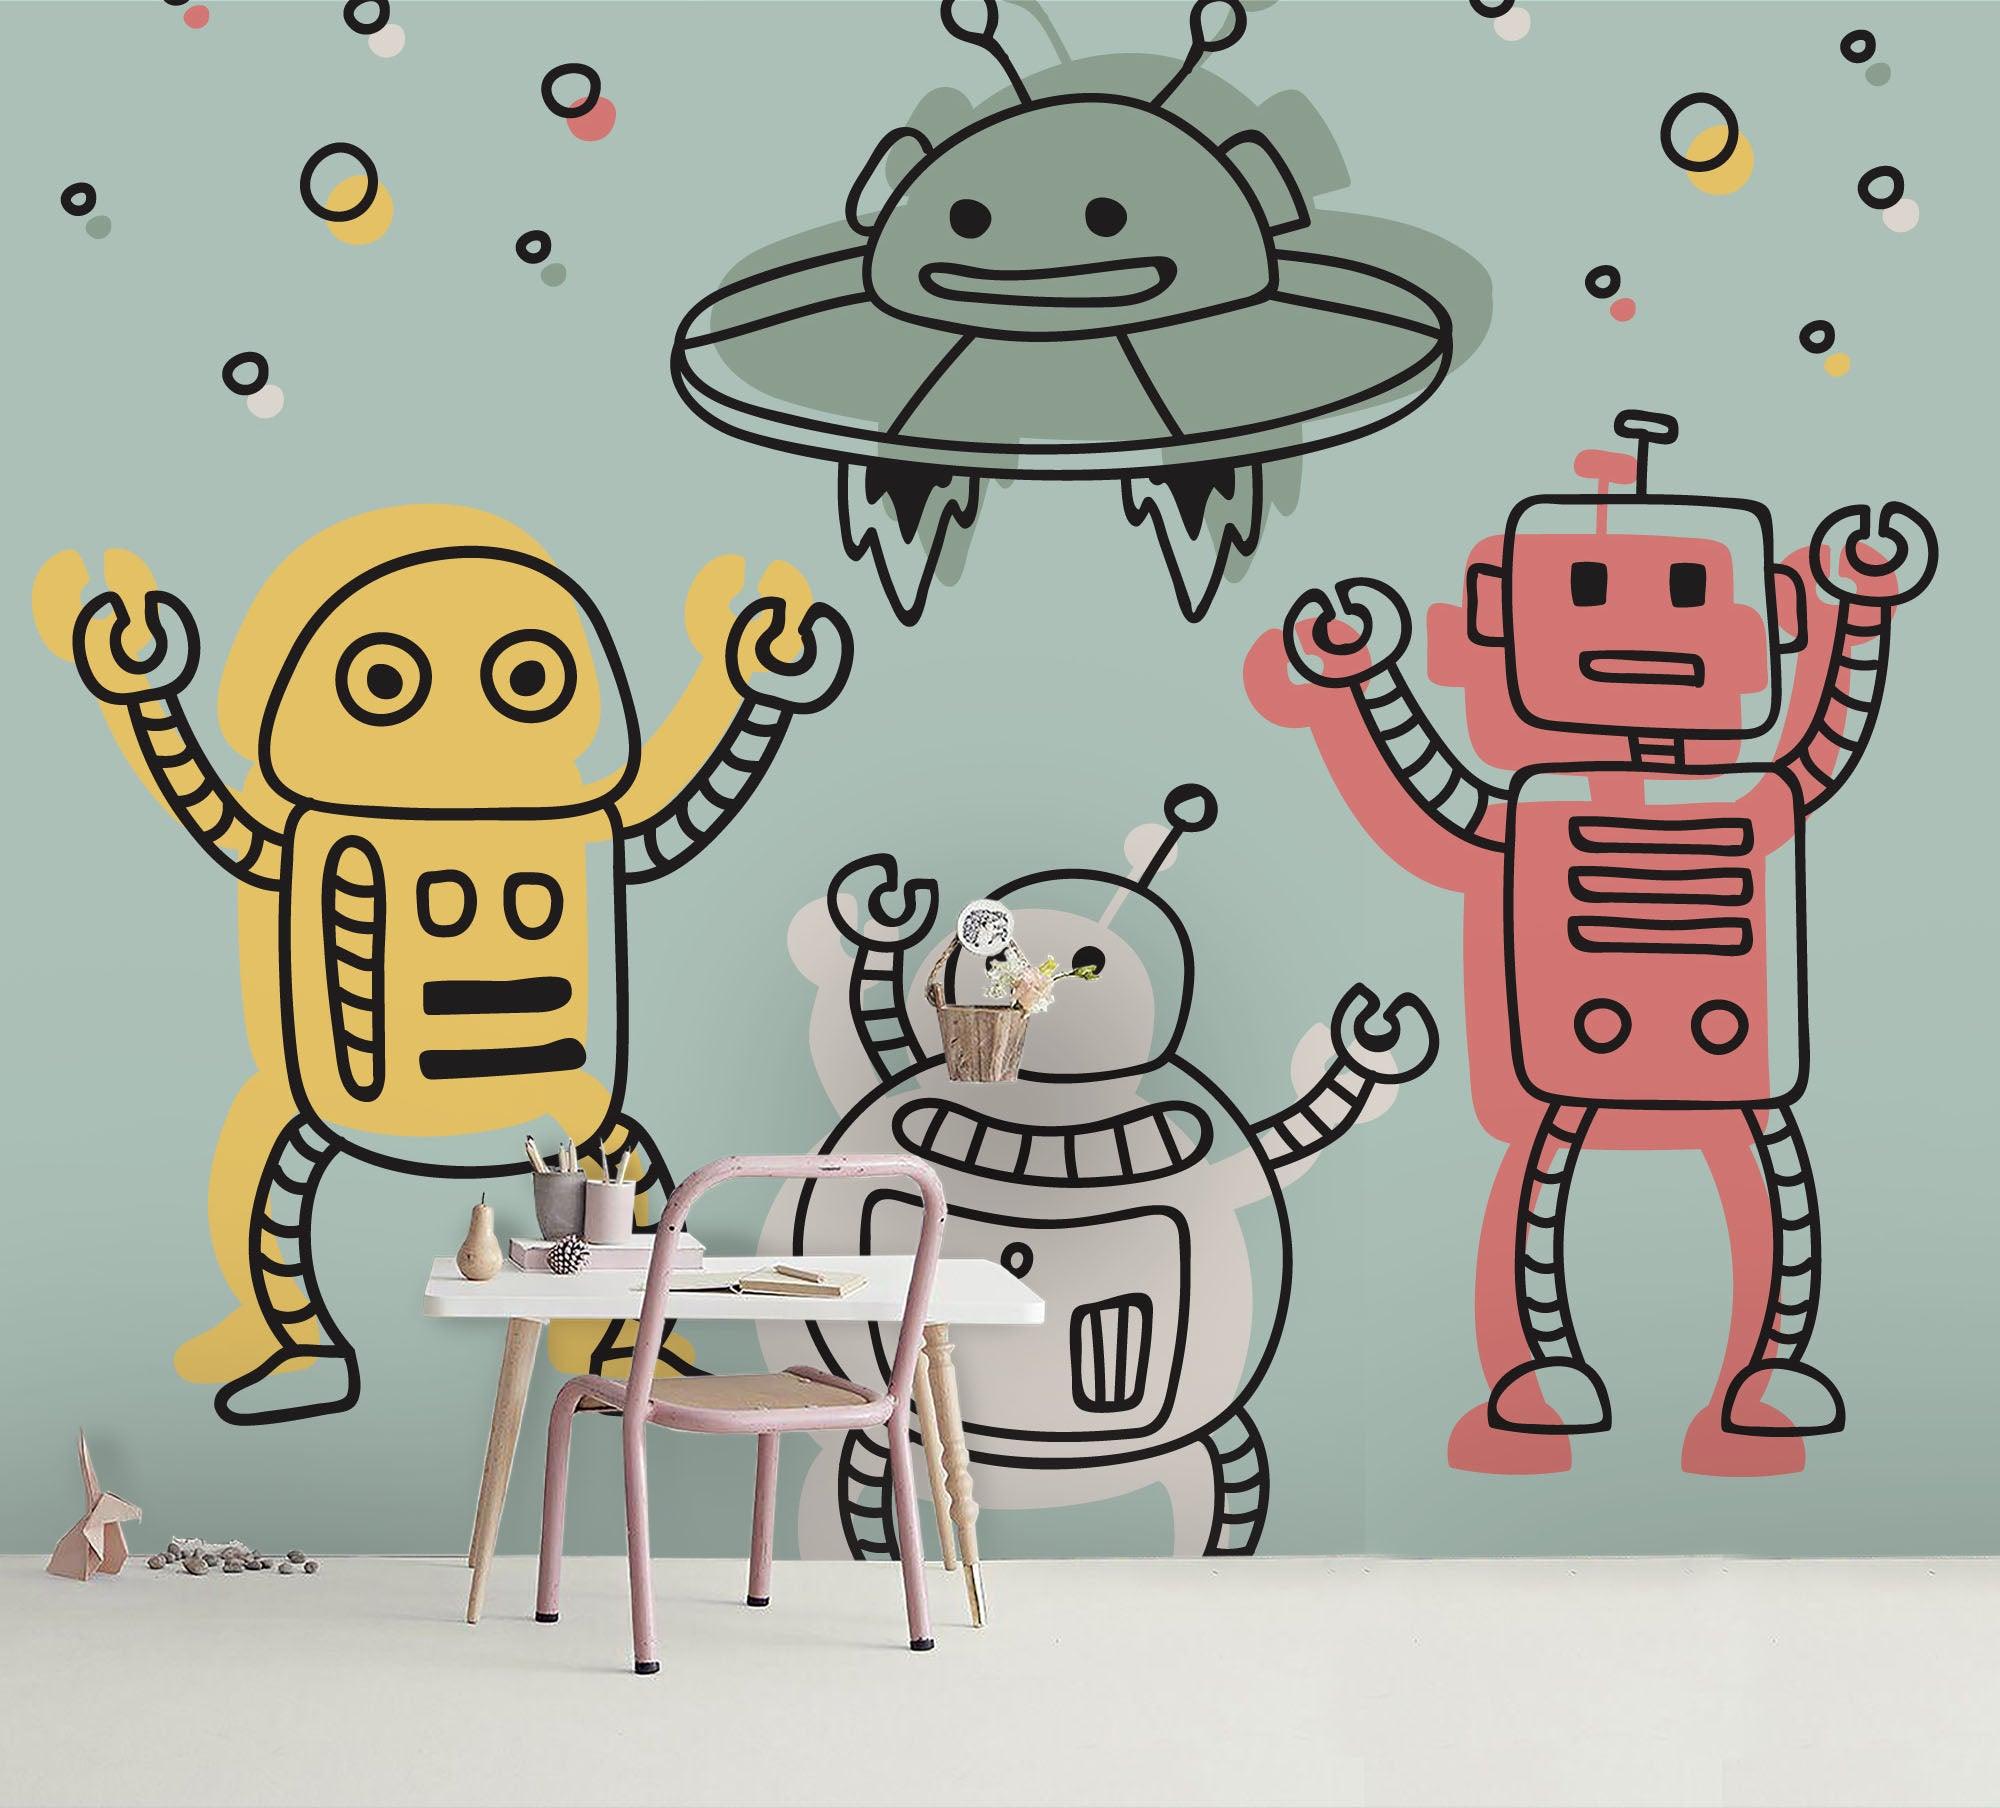 3D Cartoon Robot Spaceship Wall Mural Wallpaper 13- Jess Art Decoration